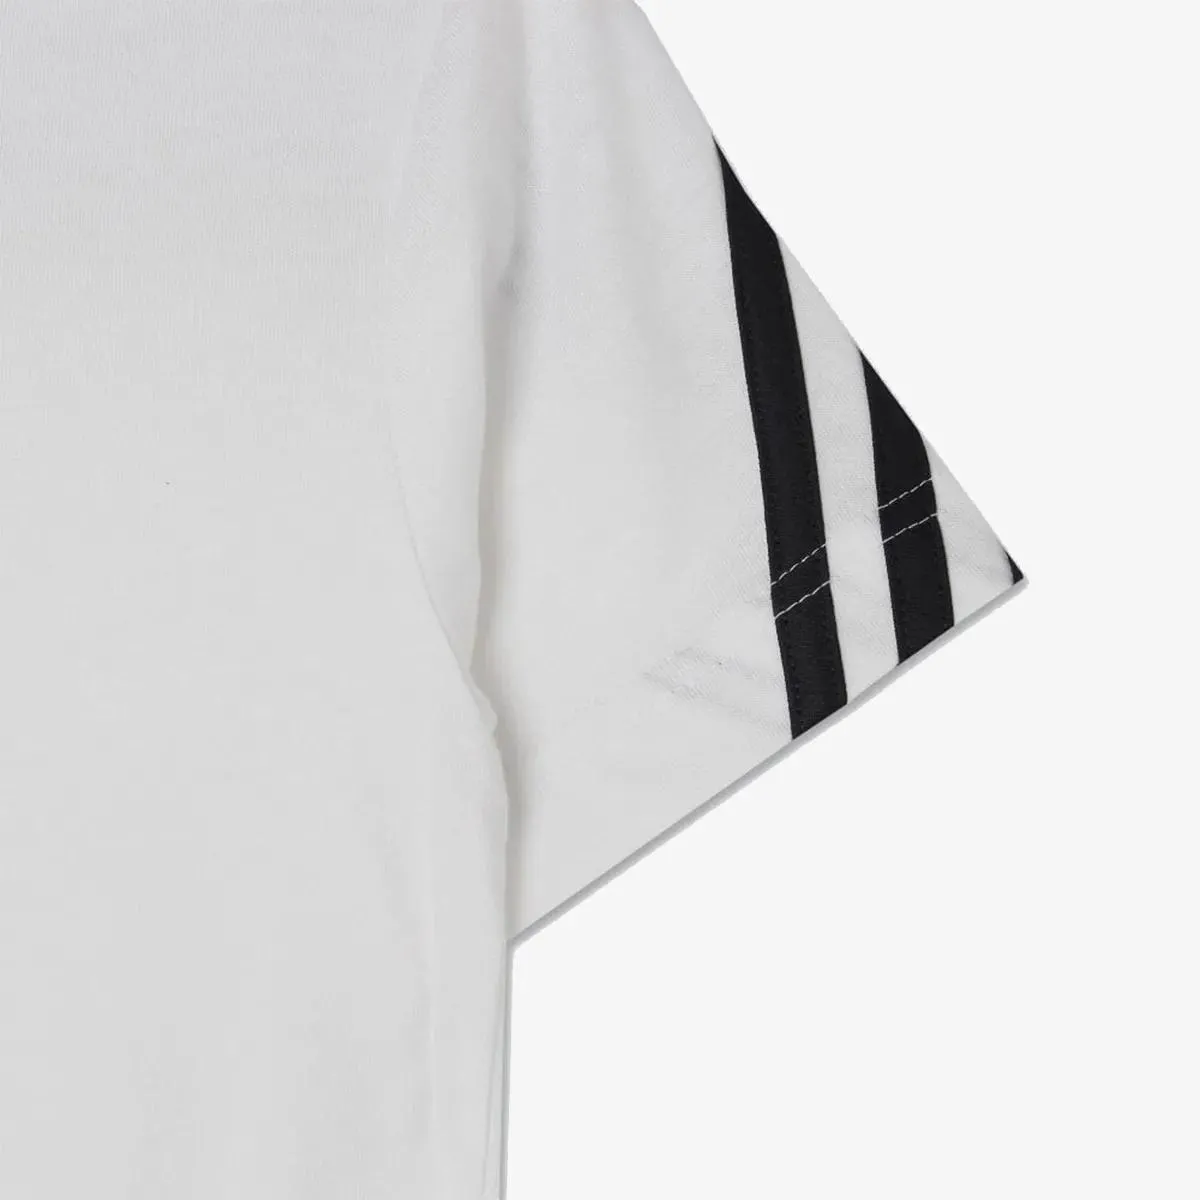 adidas T-shirt Future Icons 3 Stripes 